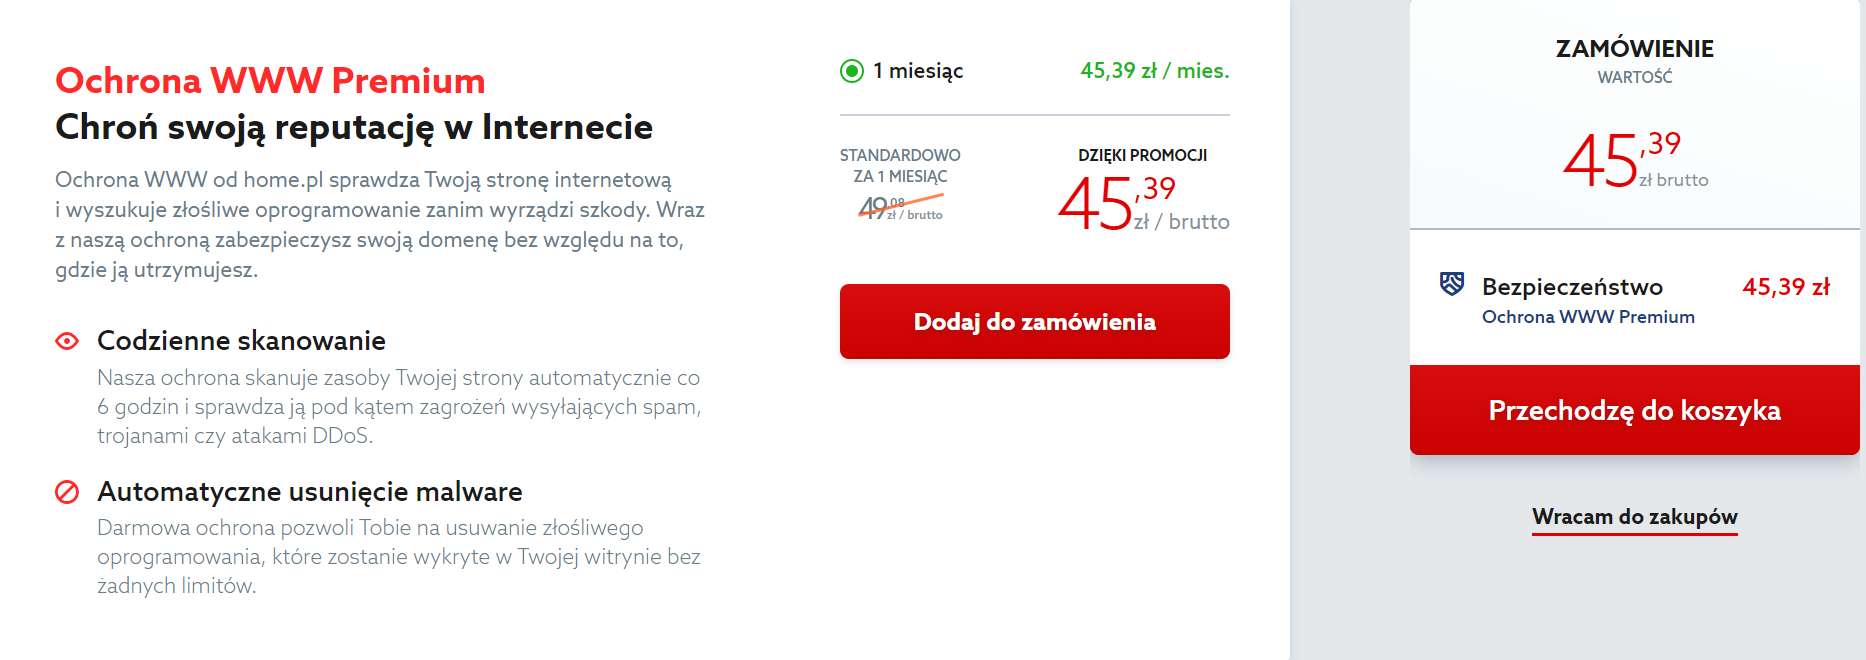 Kliknij przycisk: Przechodzę do koszyka, aby zamówić usługę Ochrona WWW w home.pl.